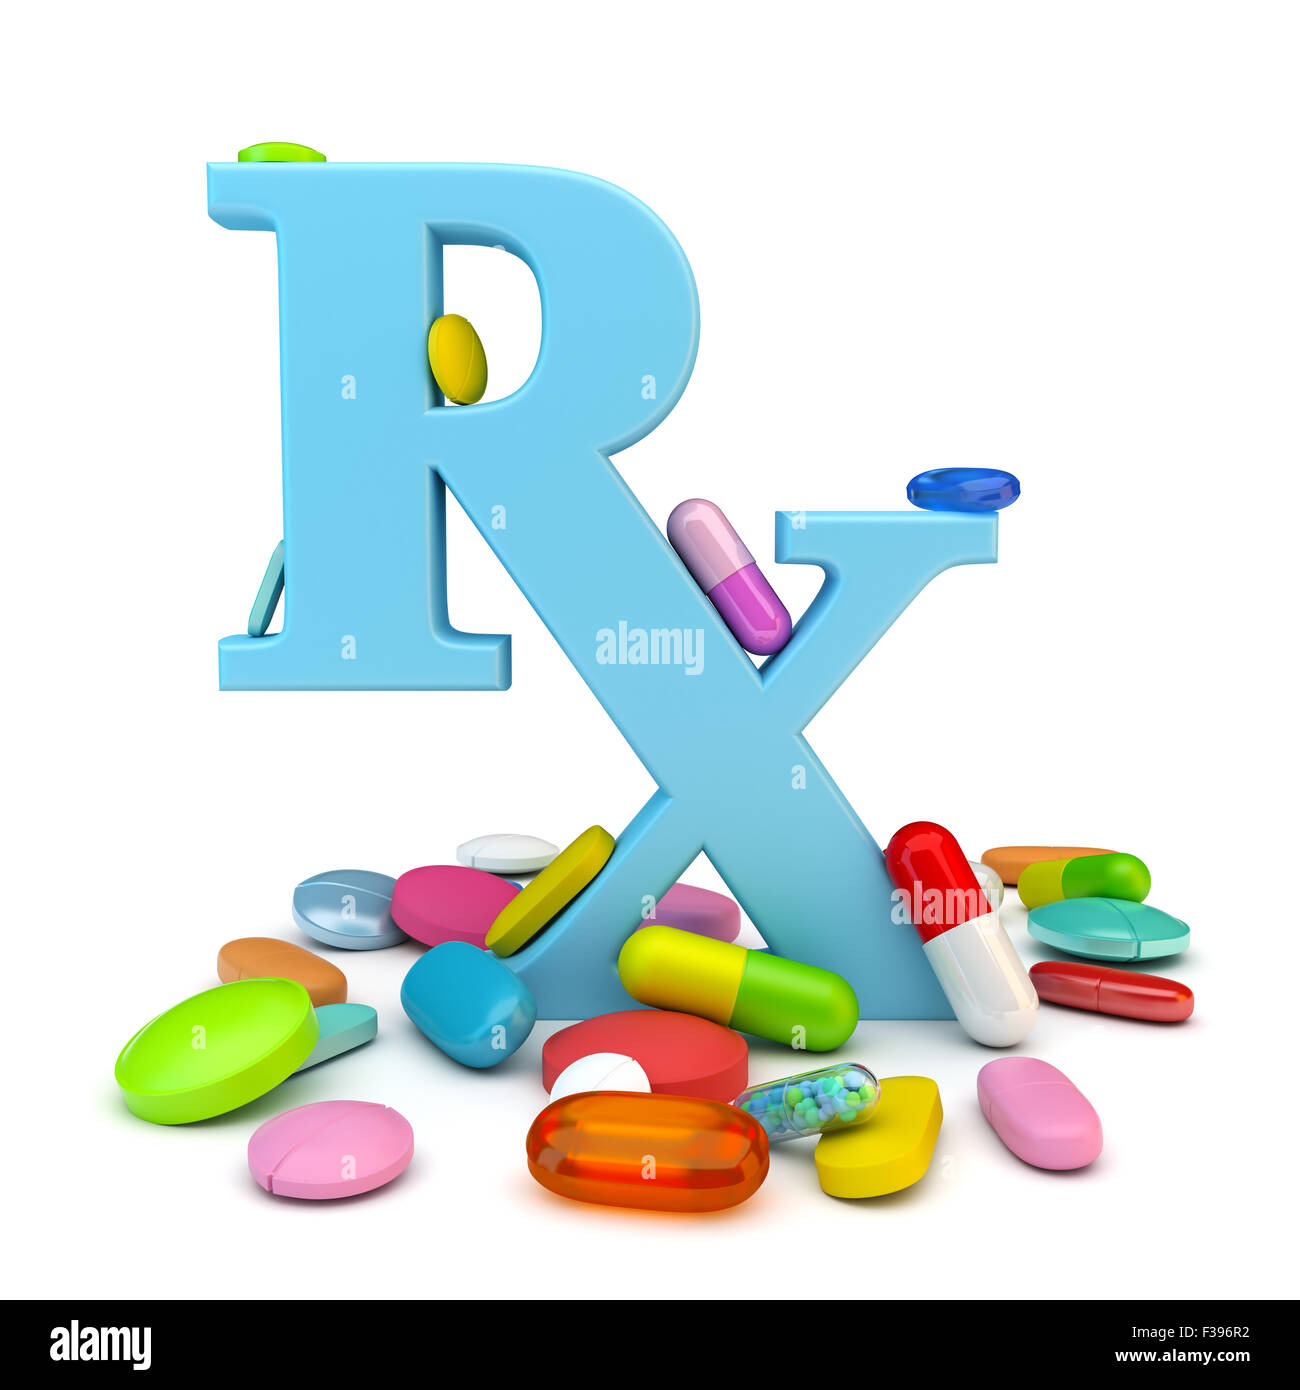 Prescription drugs Stock Photo